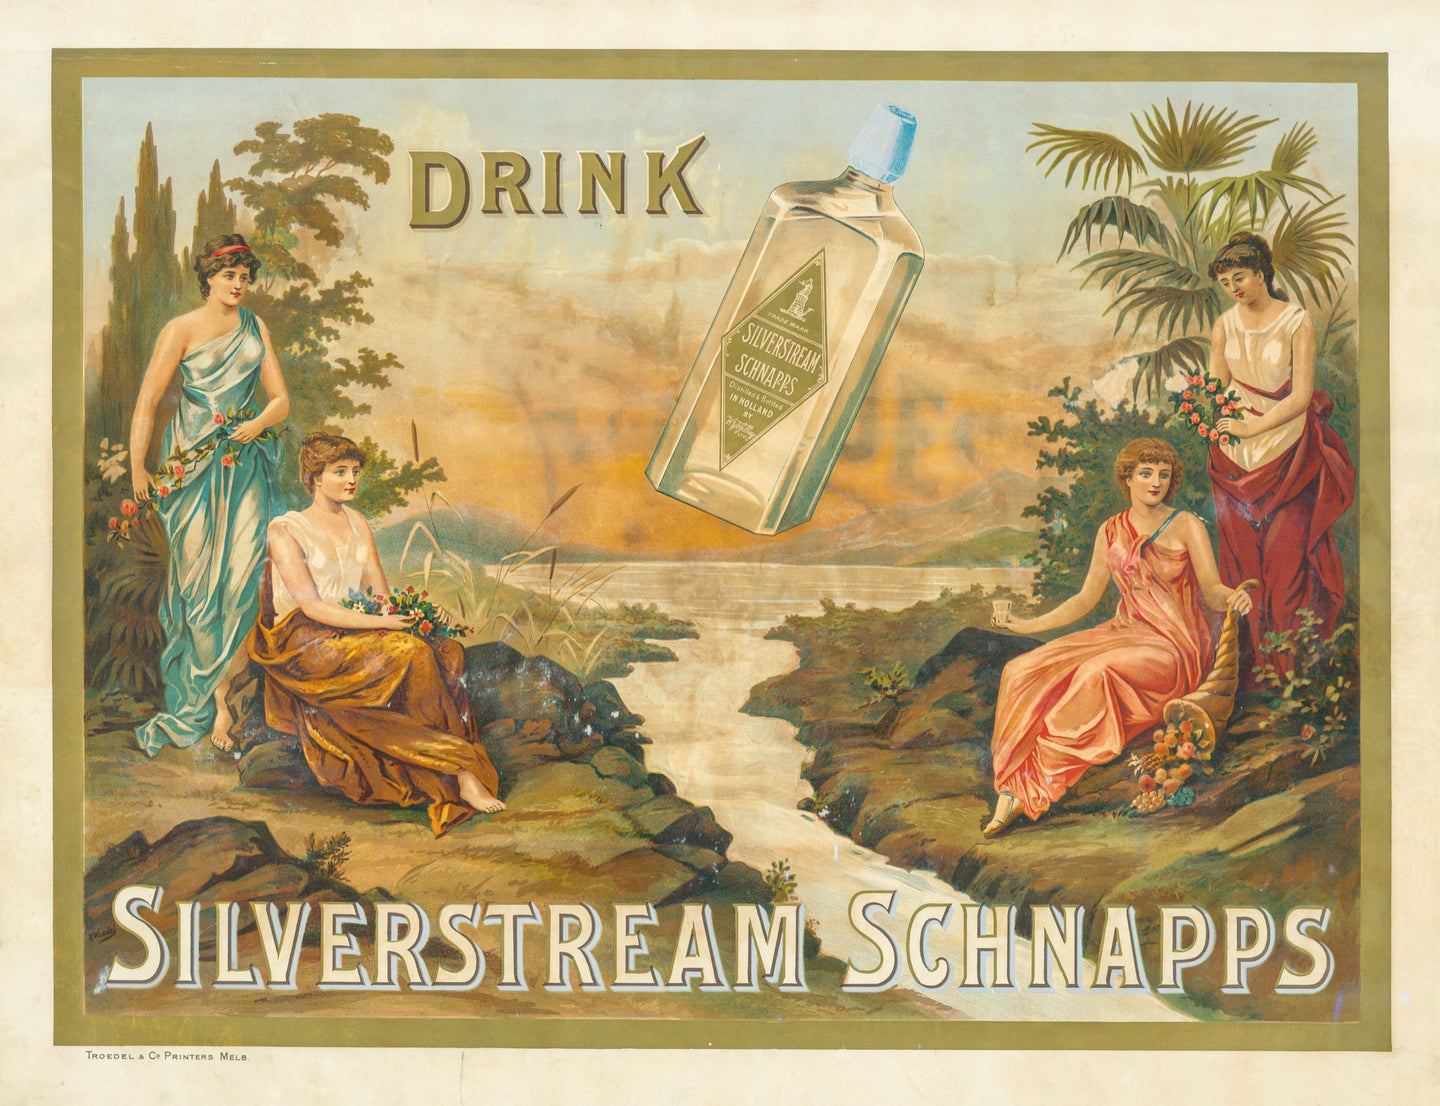 Drink Silverstream Schnapps